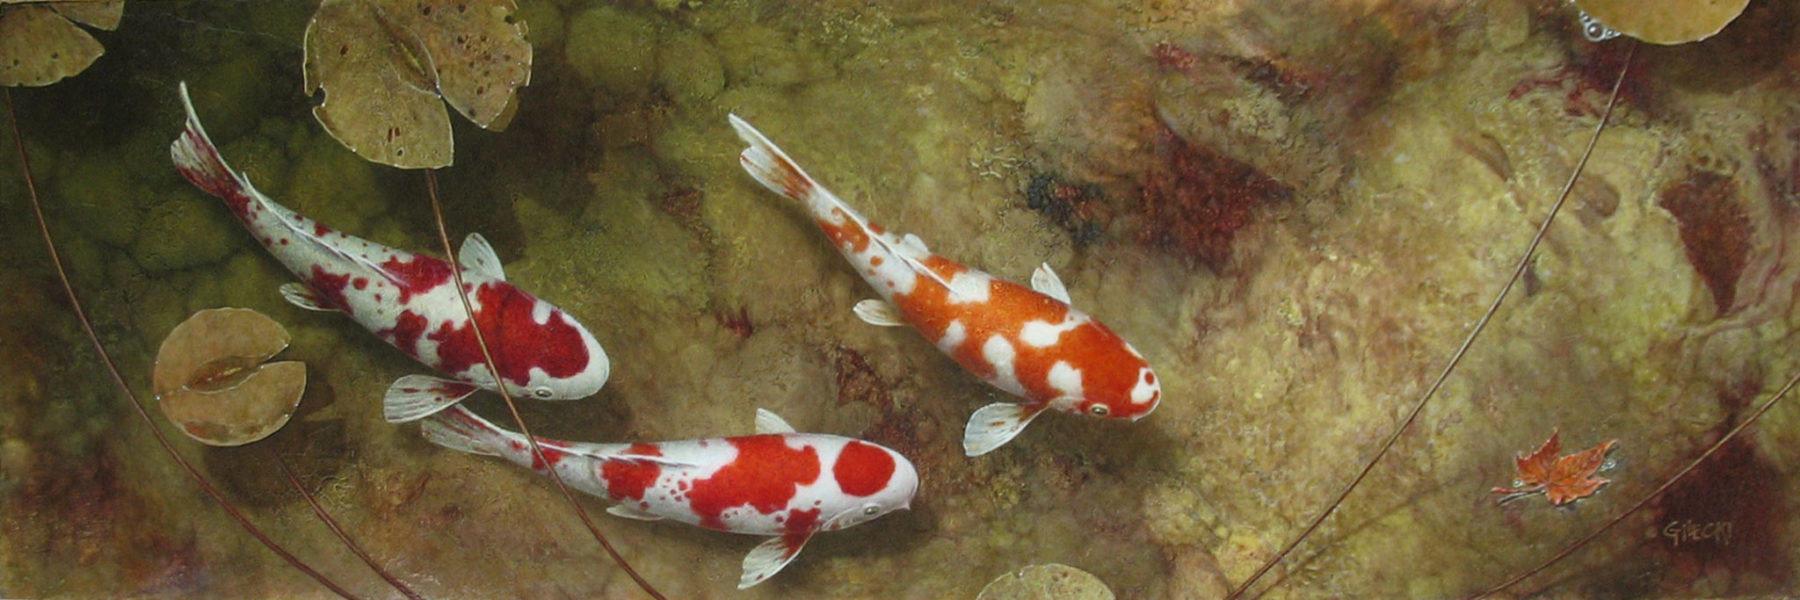 Painting of Koi fish swimming